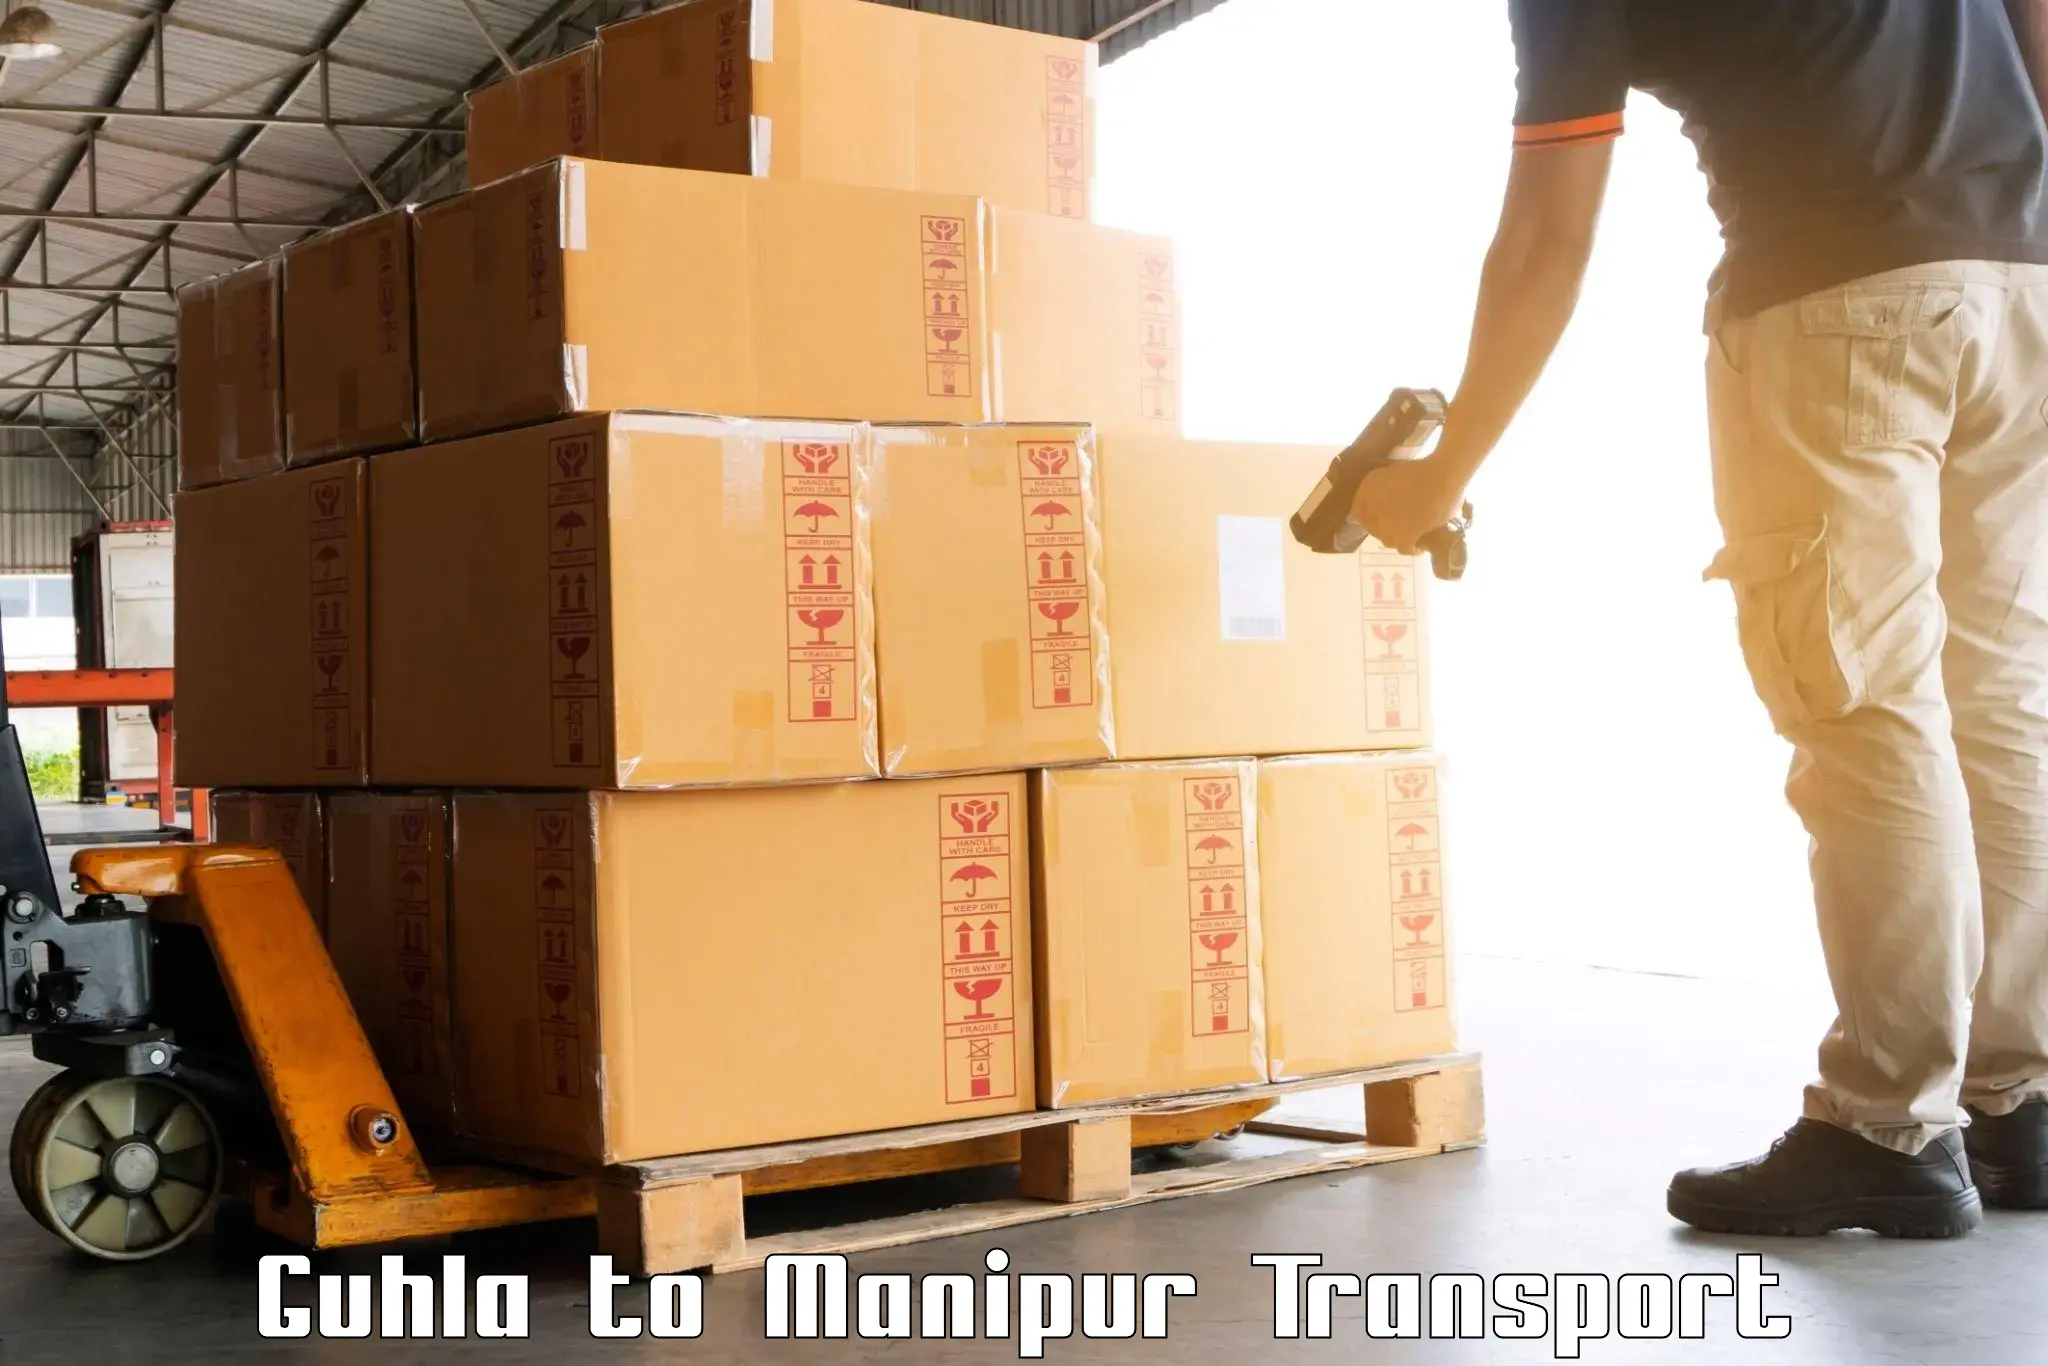 Scooty transport charges Guhla to Kaptipada